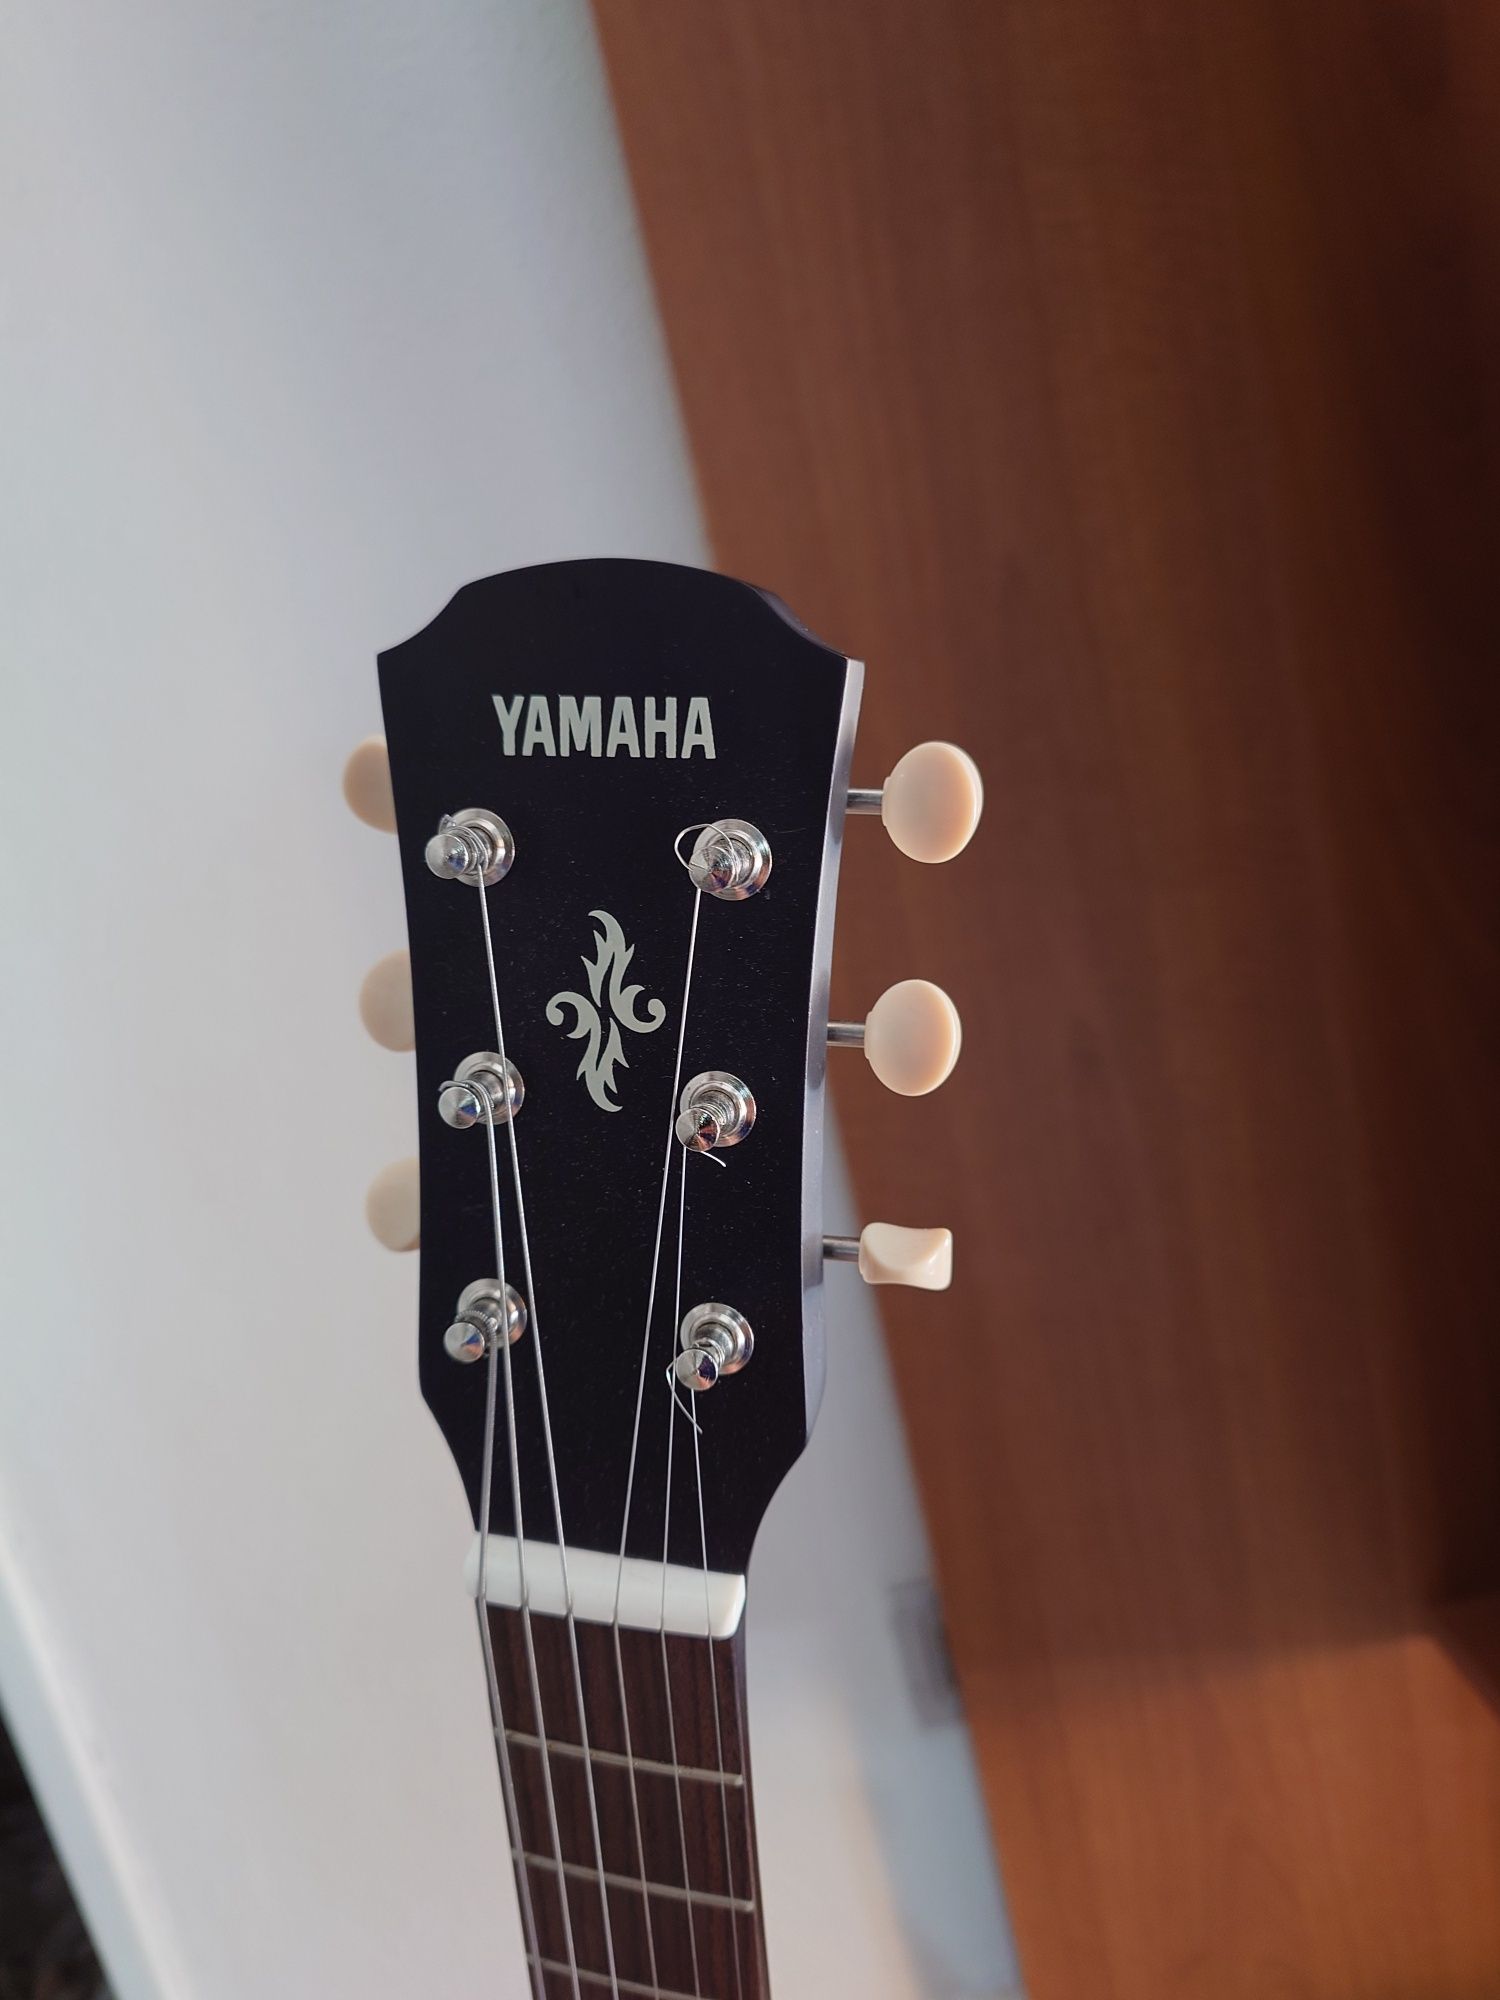 Yamaha Guitar APX T2